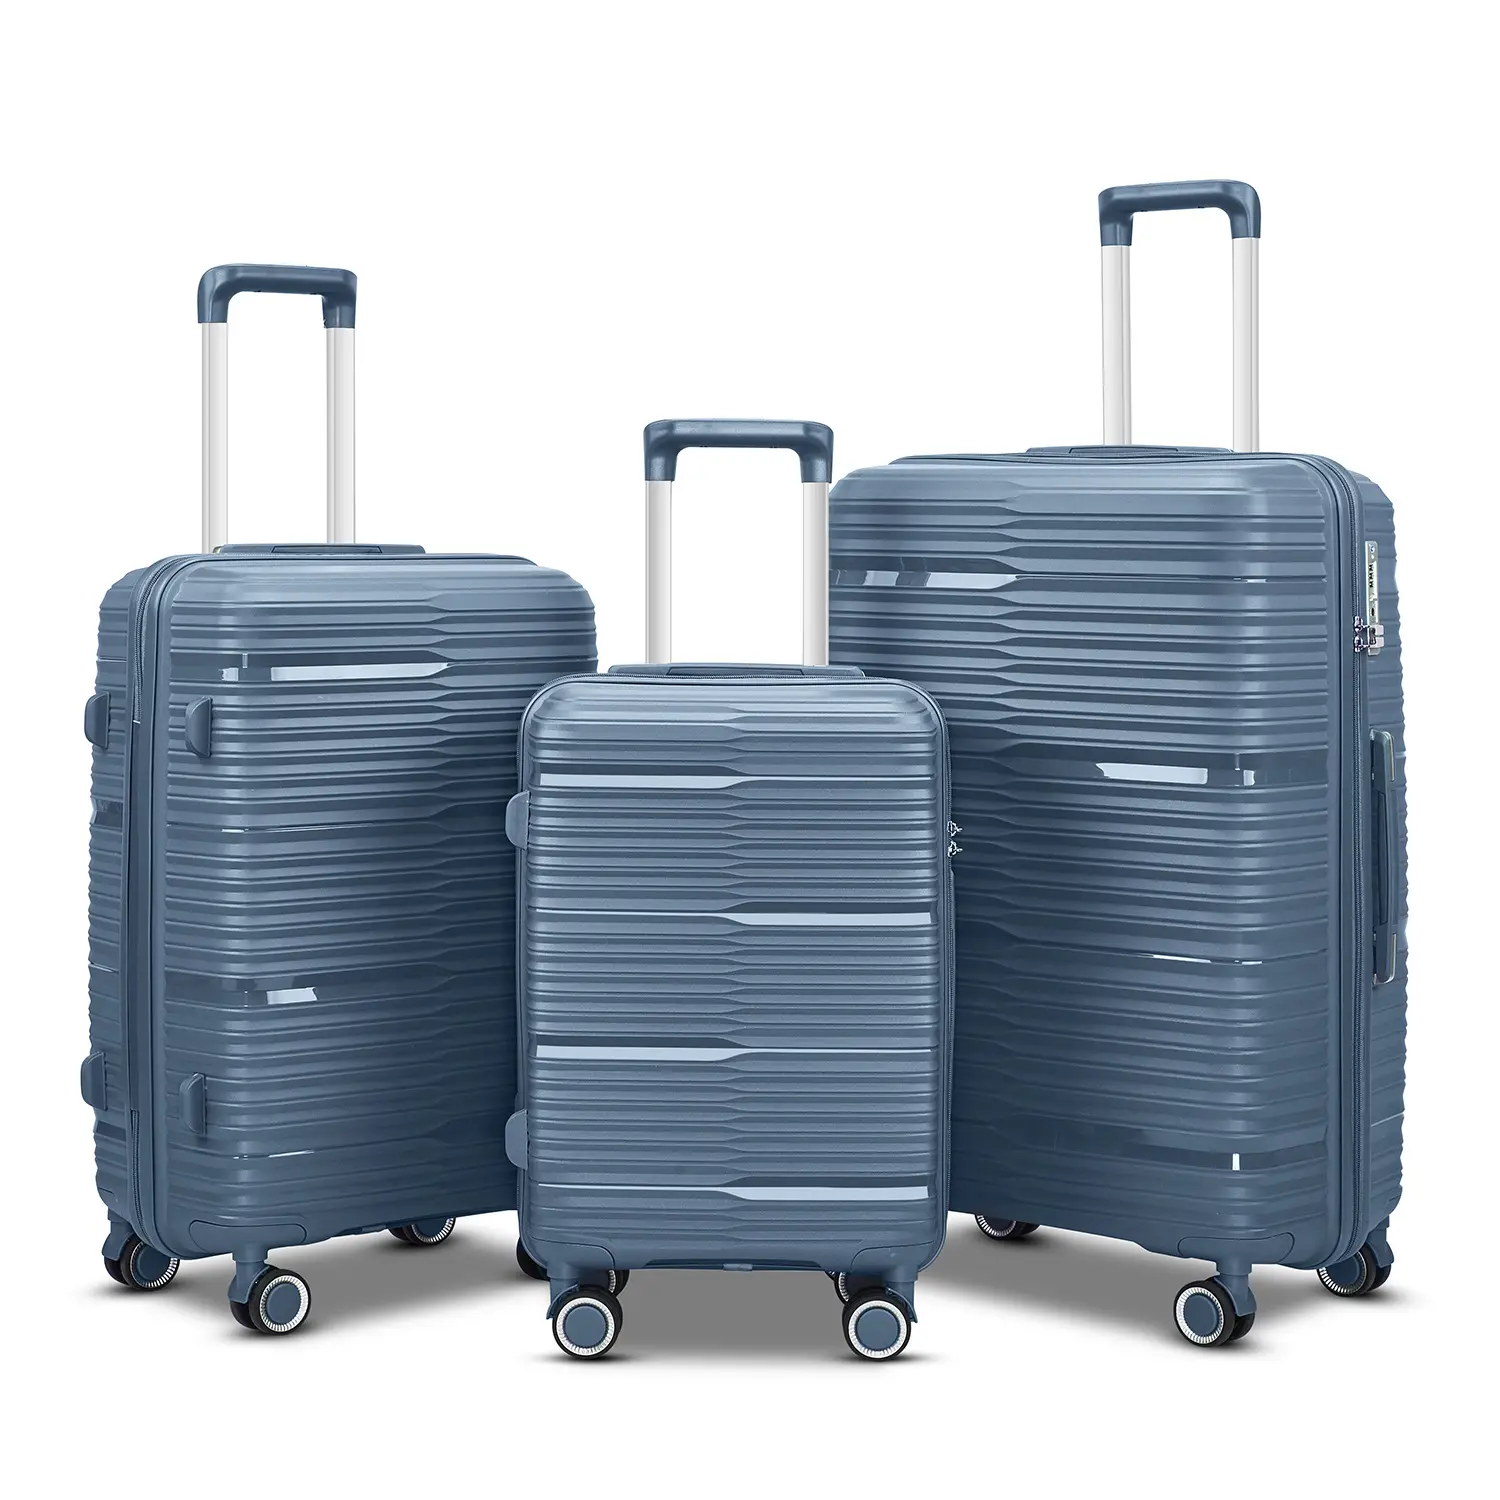 कैरी-ऑन सूटकेस ट्रैवल बैग सेट आवश्यक सामान सामान बड़े आकार के केबिन नरम ट्रॉली रातोंरात पहियों के नरम-पक्षीय सूटकेस रोलिंग